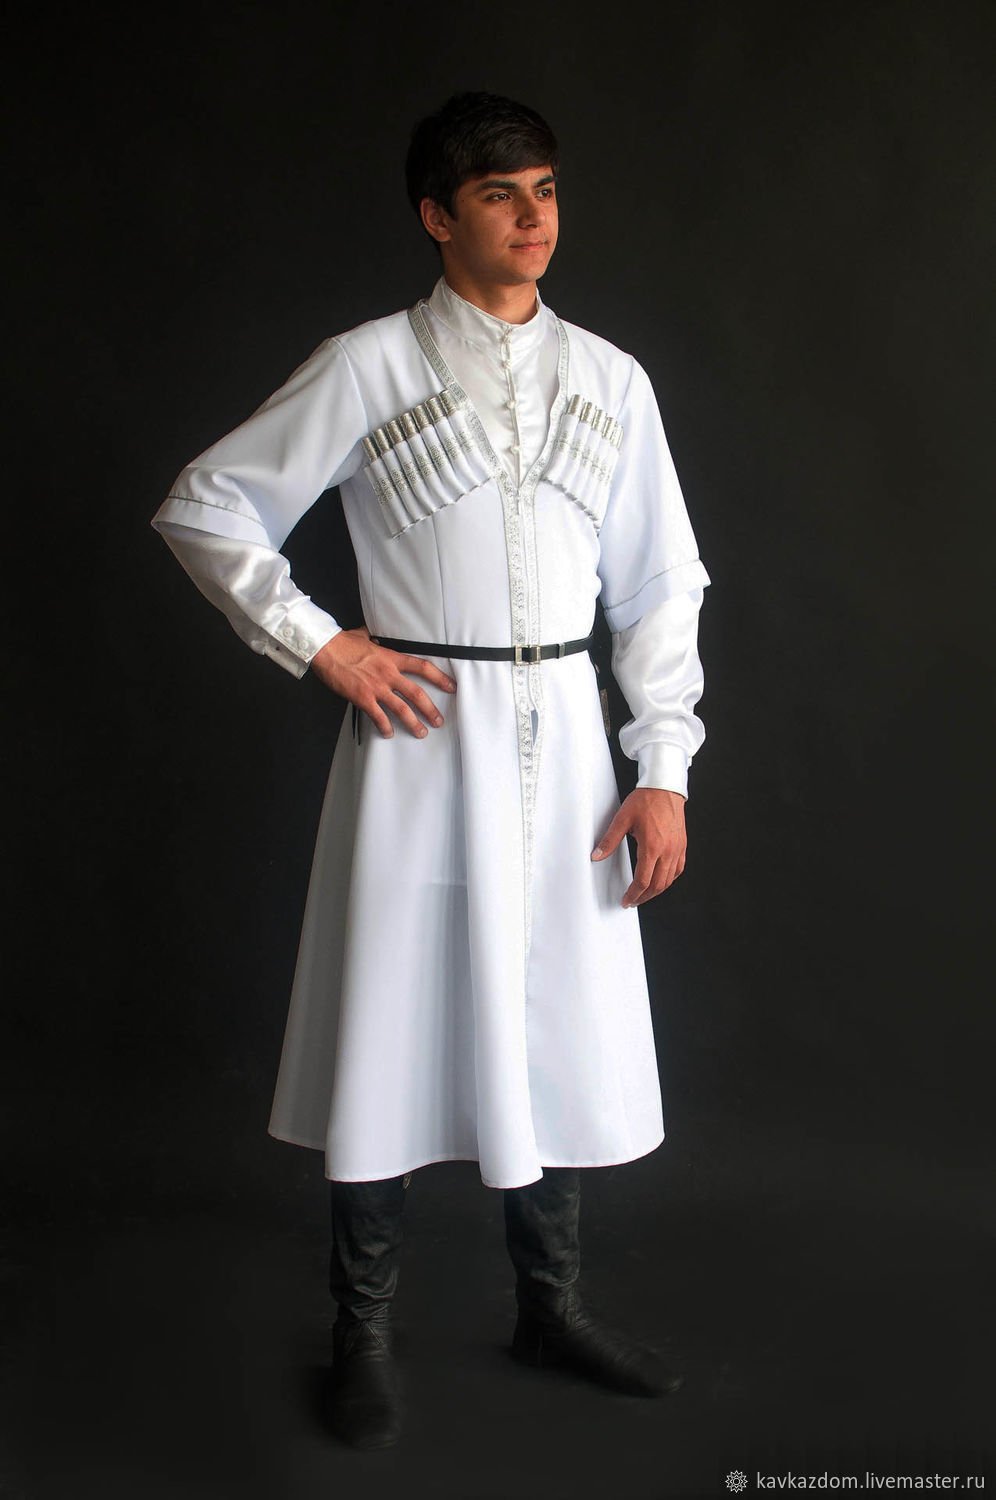 Гордость Грузии – грузинский национальный костюм – мужcкая и женская традиционная одежда